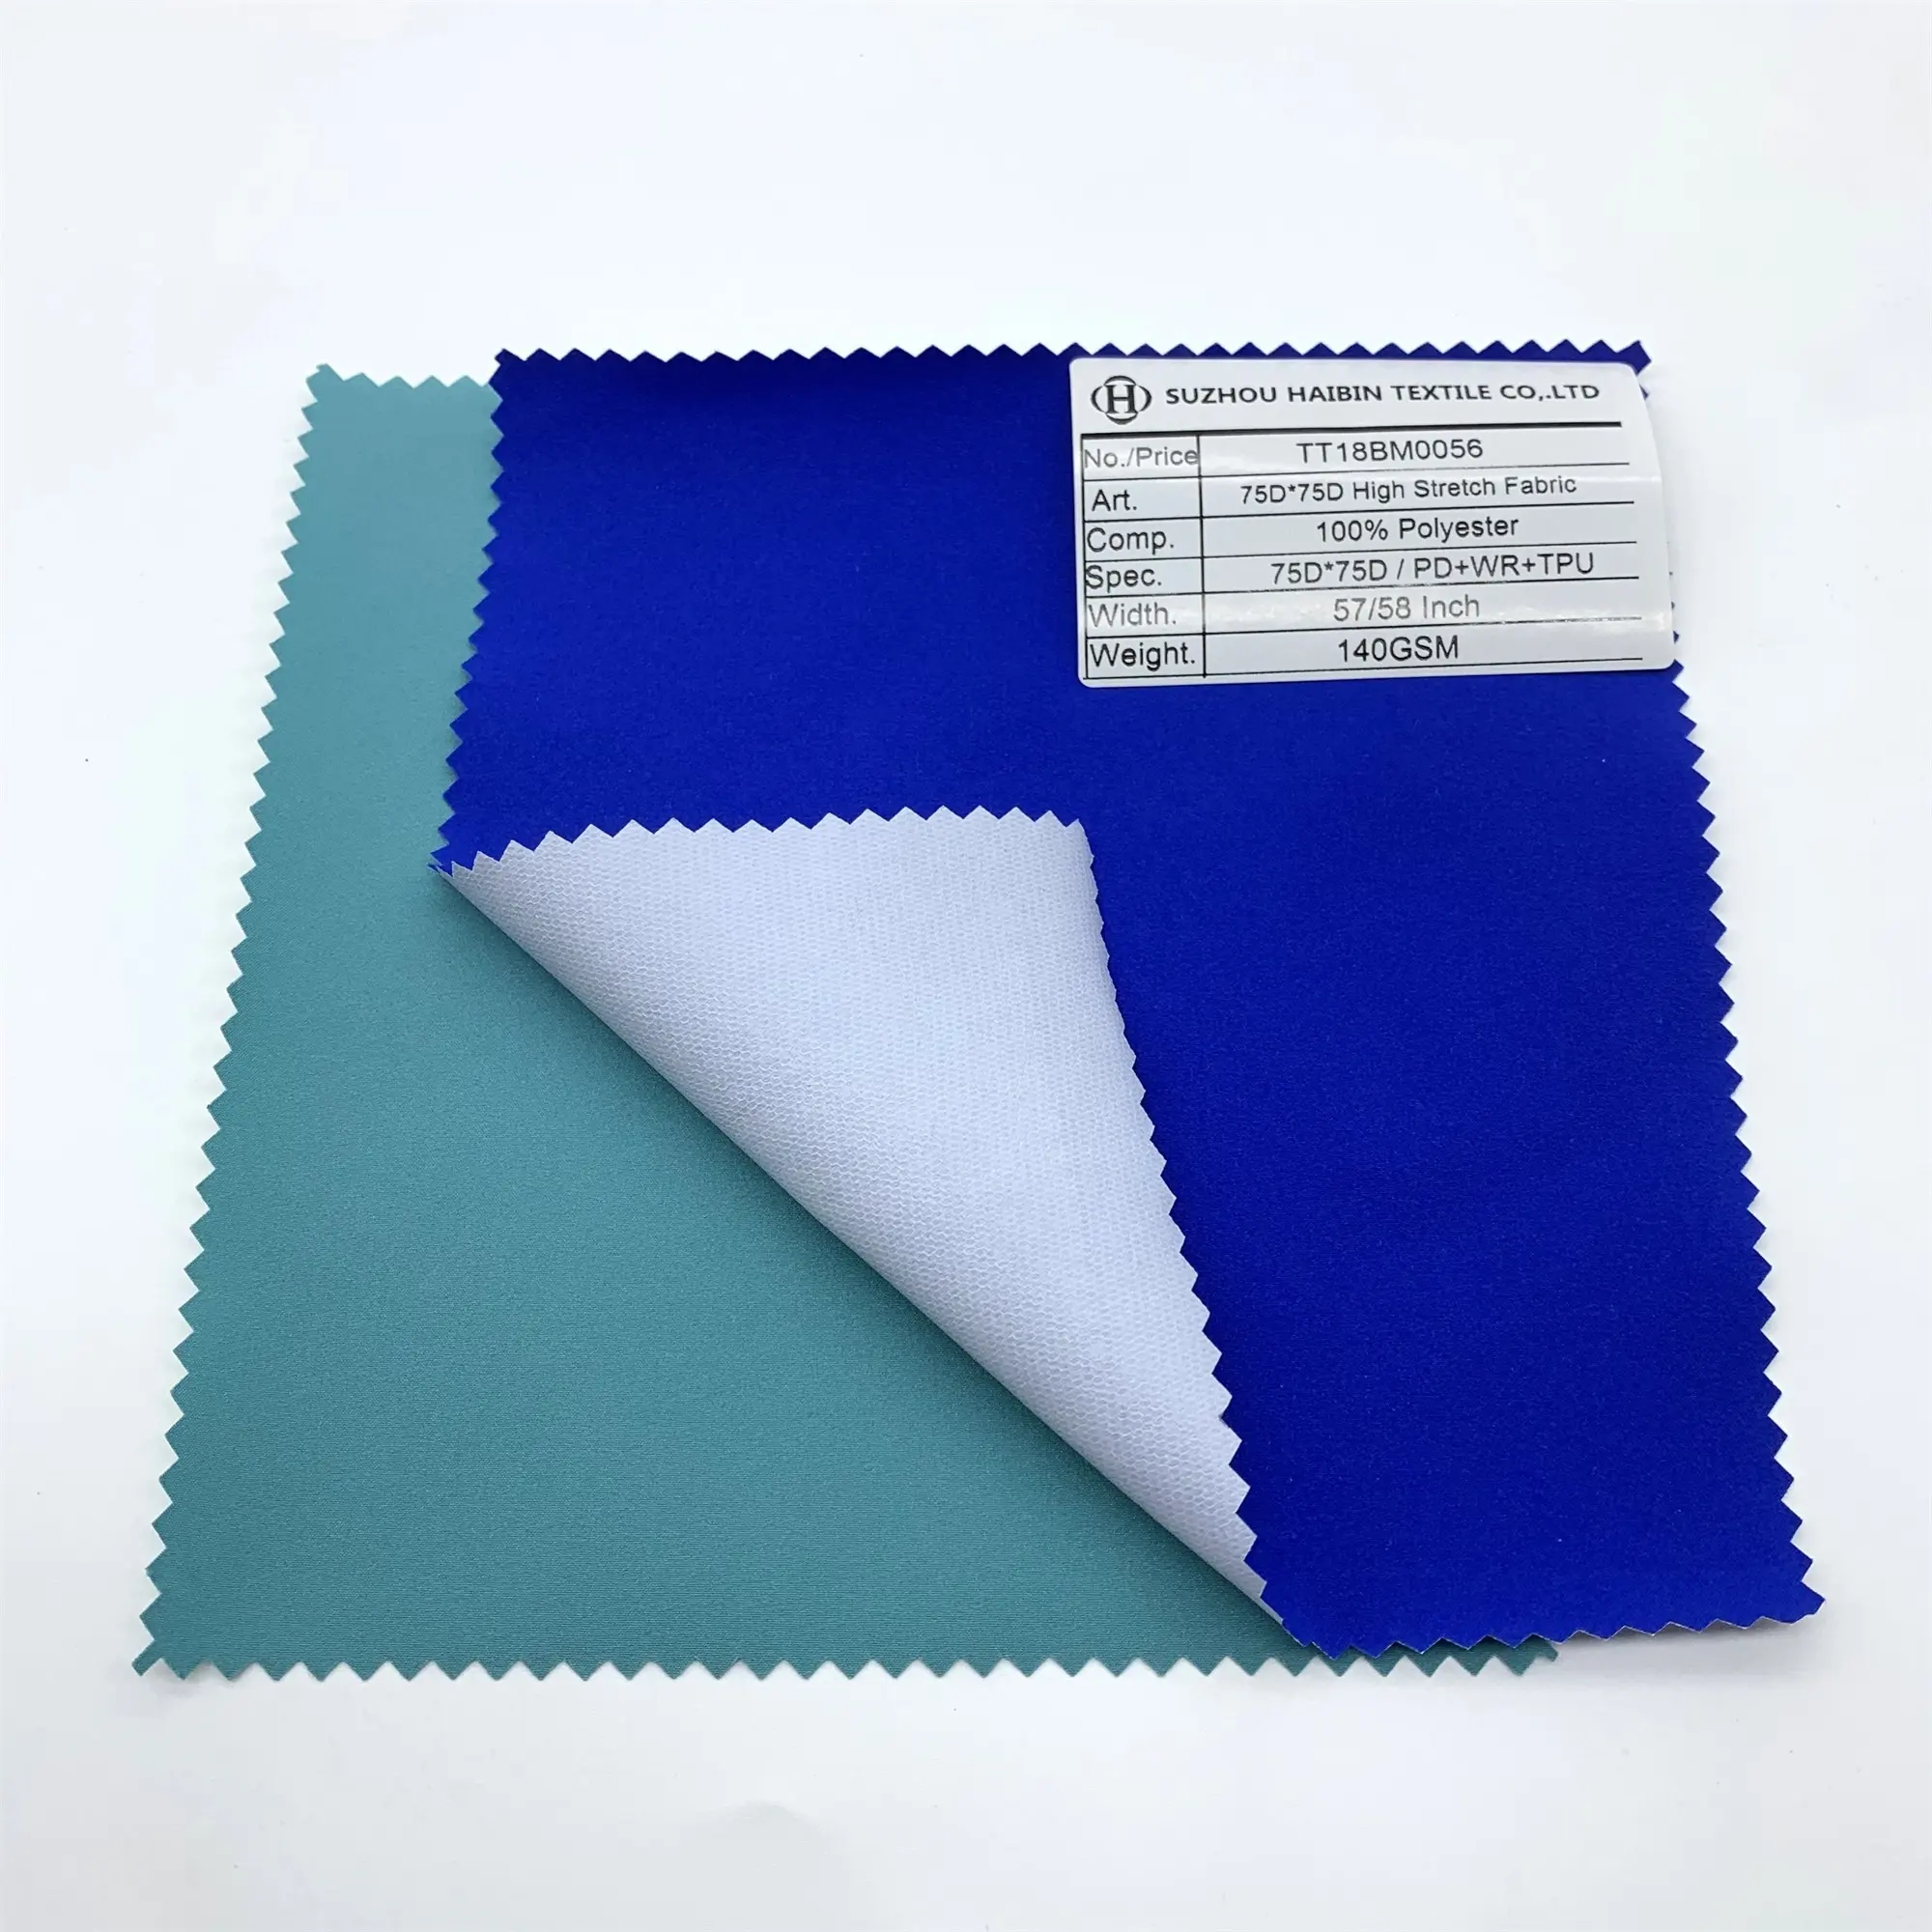 % 100% Polyester malzeme yüksek streç kumaş Lucency TPU kaplama su geçirmez giysi kumaşı/ceket